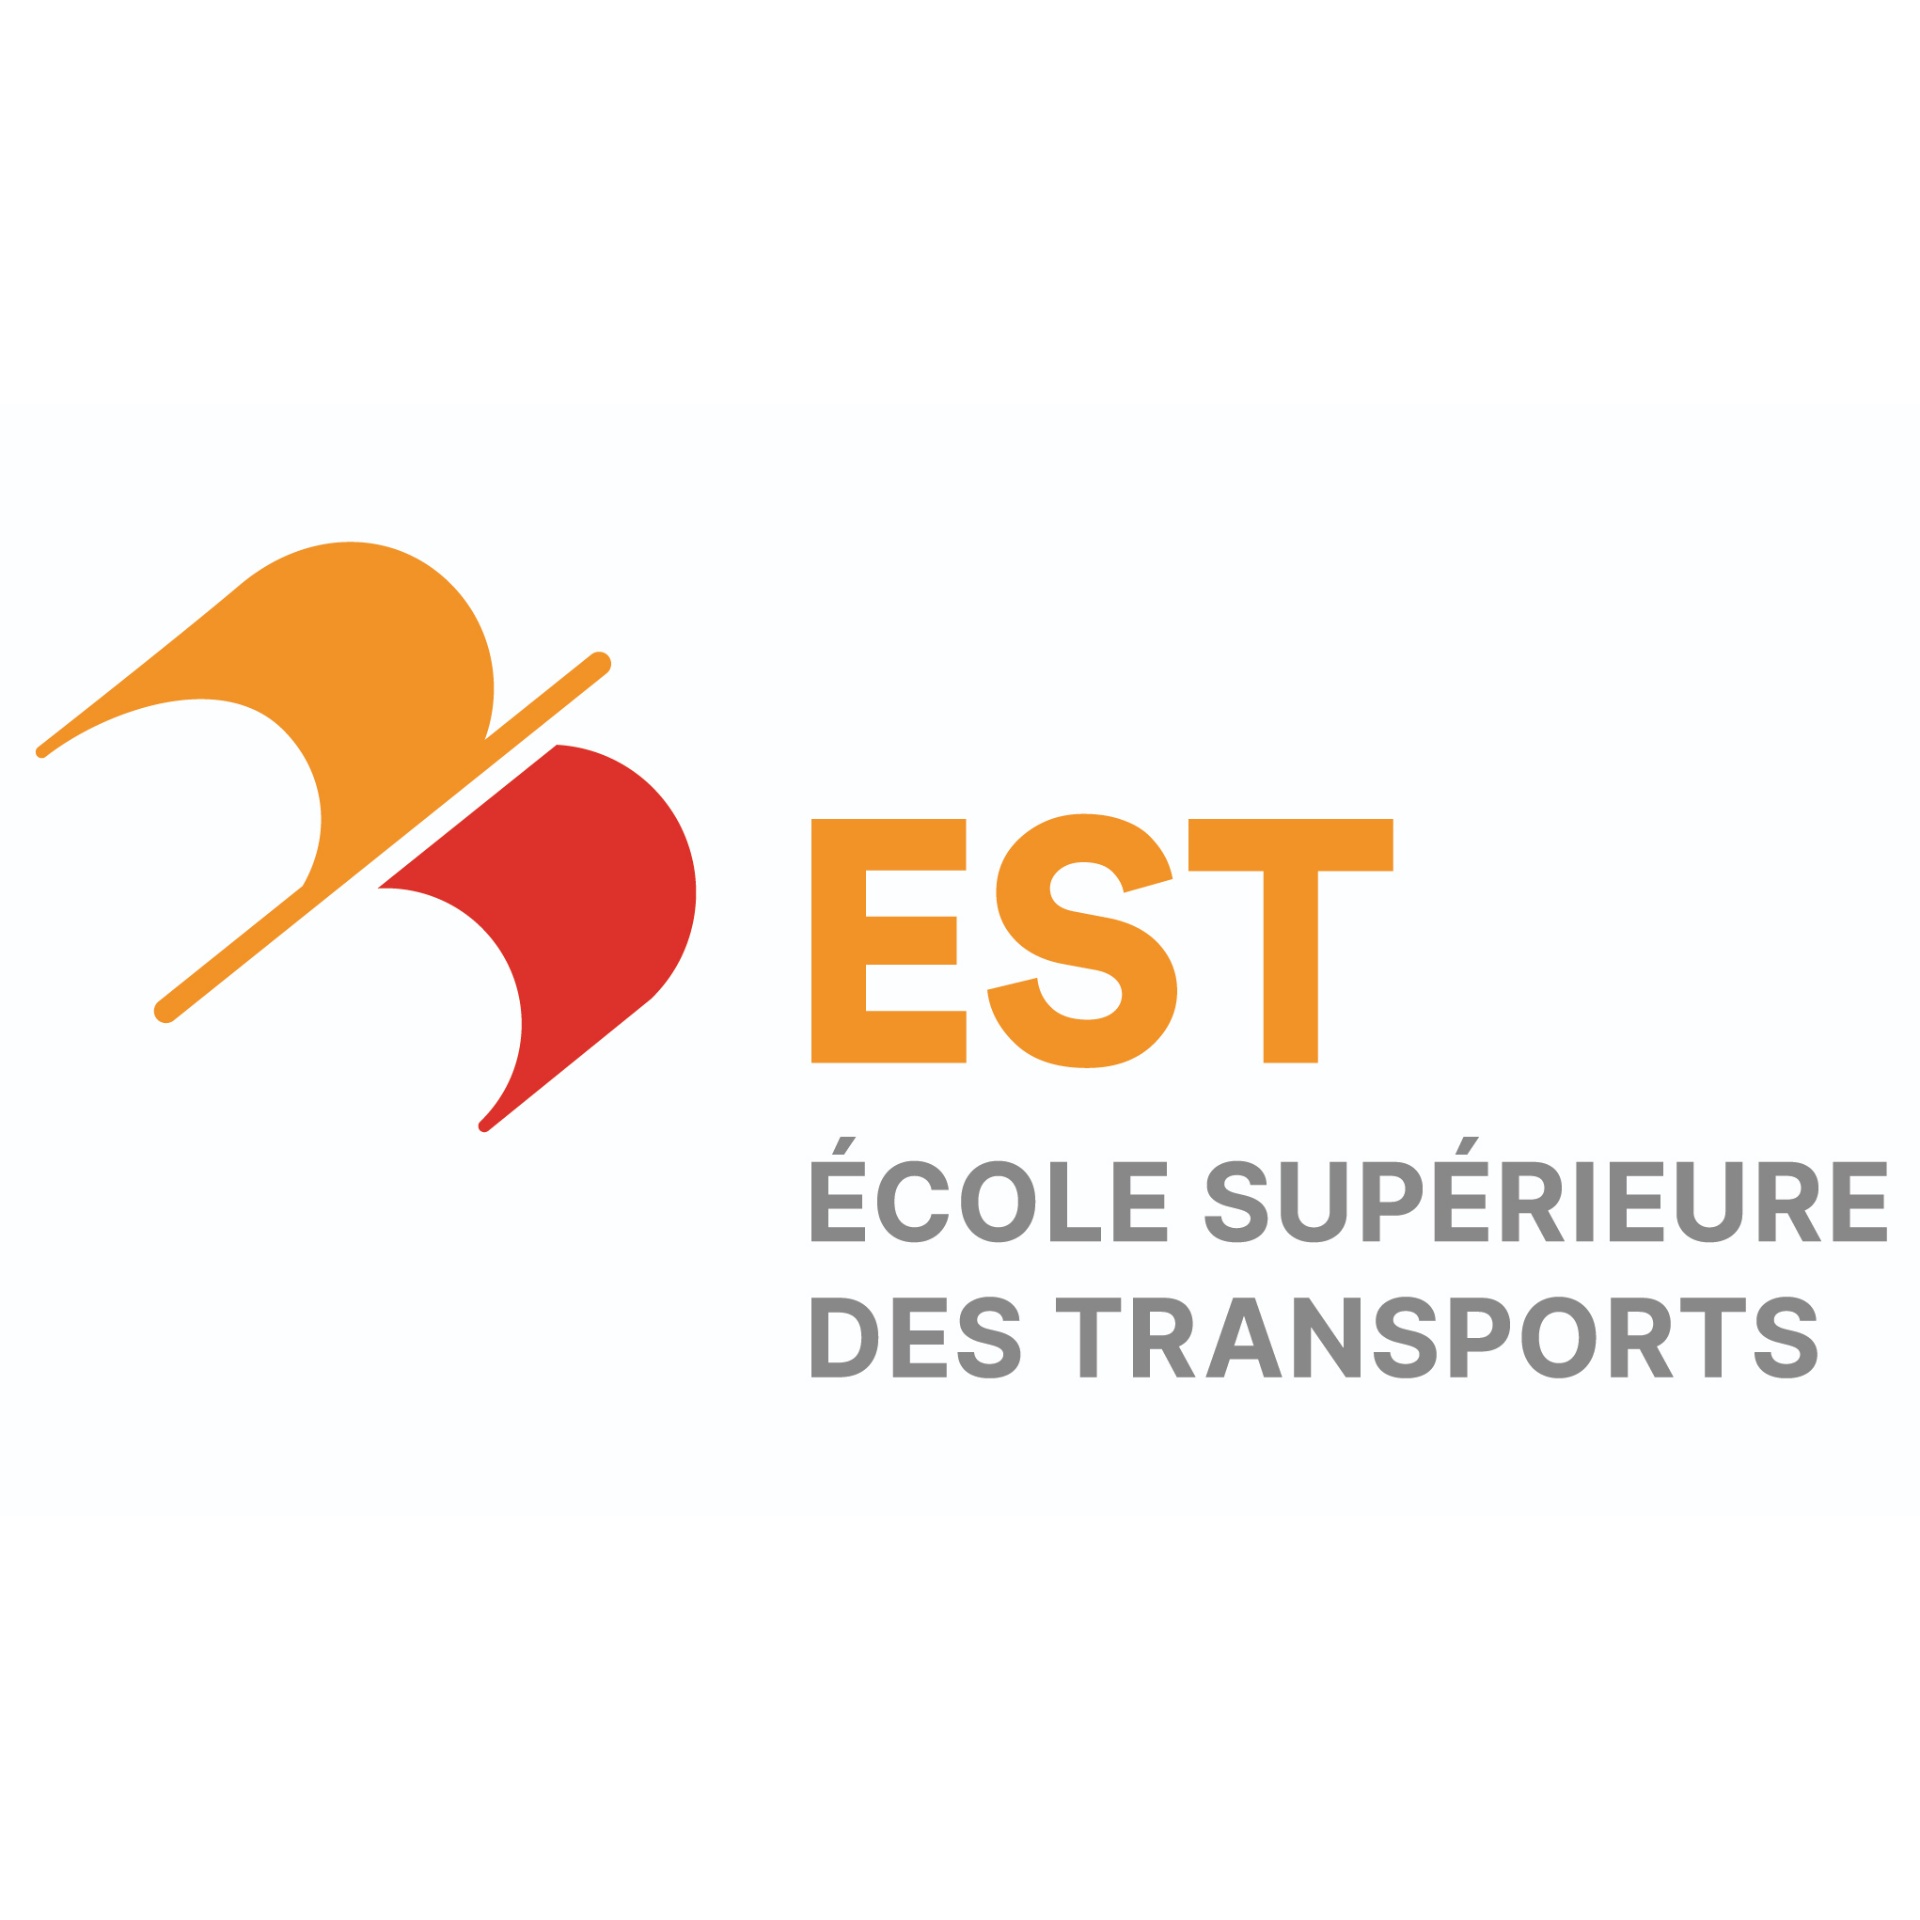 EST - ÉCOLE SUPÉRIEURE DES TRANSPORTS